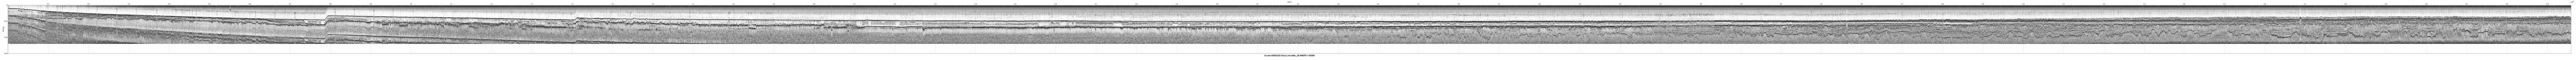 00SCC02 b00c_26 seismic profile image